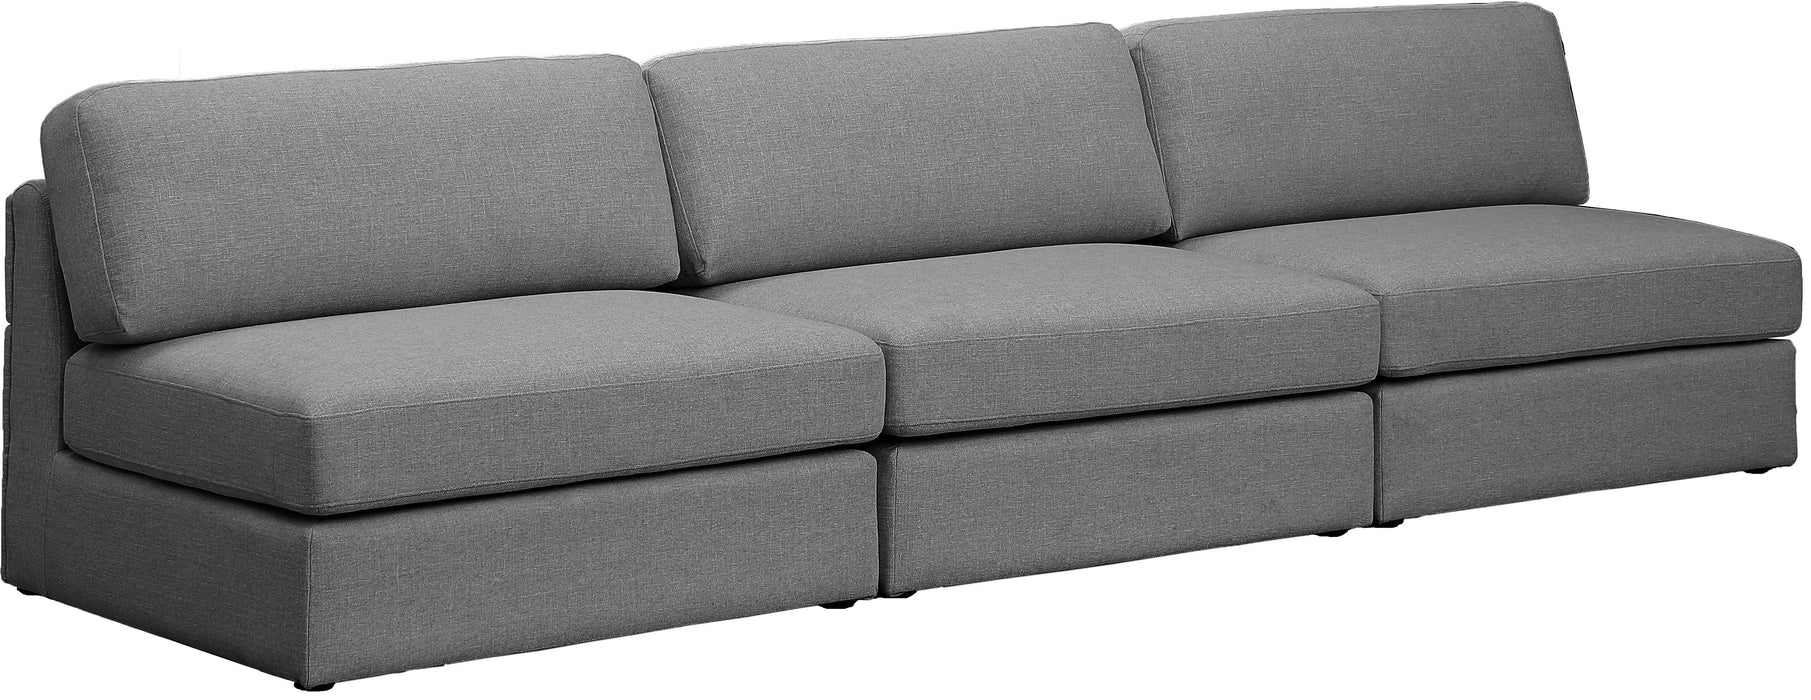 Beckham - Modular 3 Seats Armless Sofa